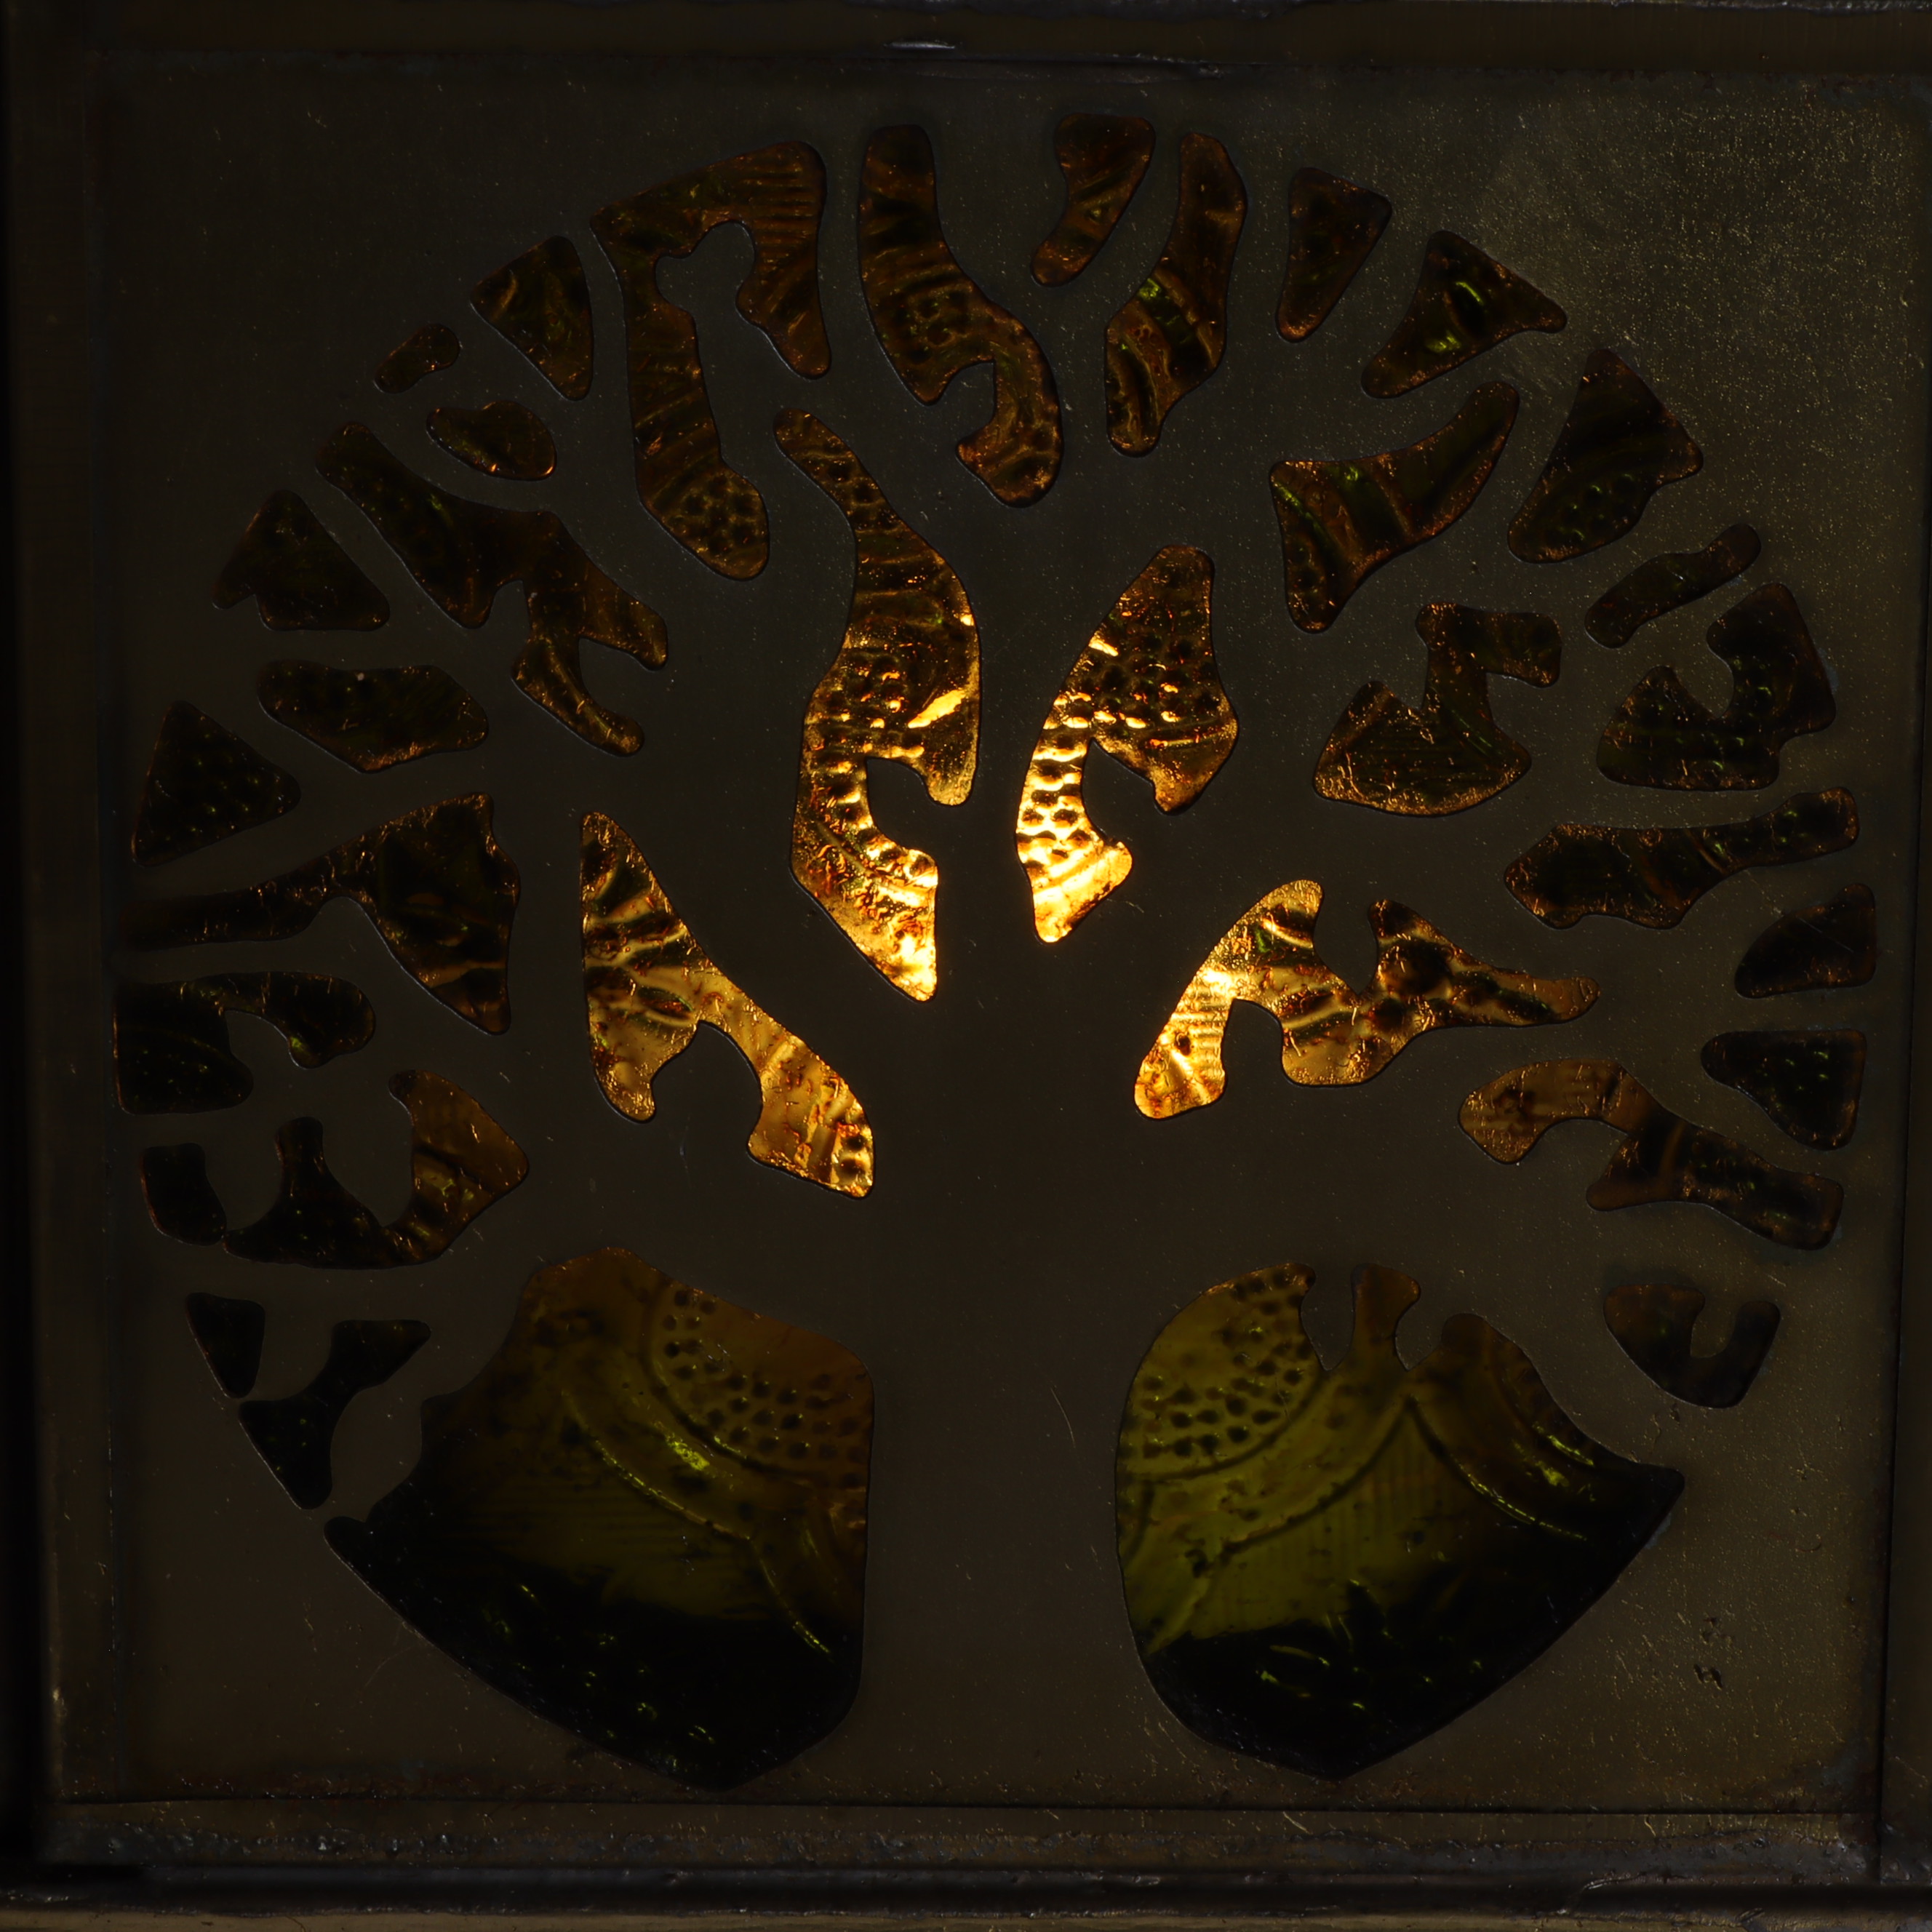 Laterne aus Metall - Baum des Lebens - messingfarbend mit orientalisch gelben Glasfenstern - Teelichthalter zum Hängen oder Stellen - im Haus oder Outdoor